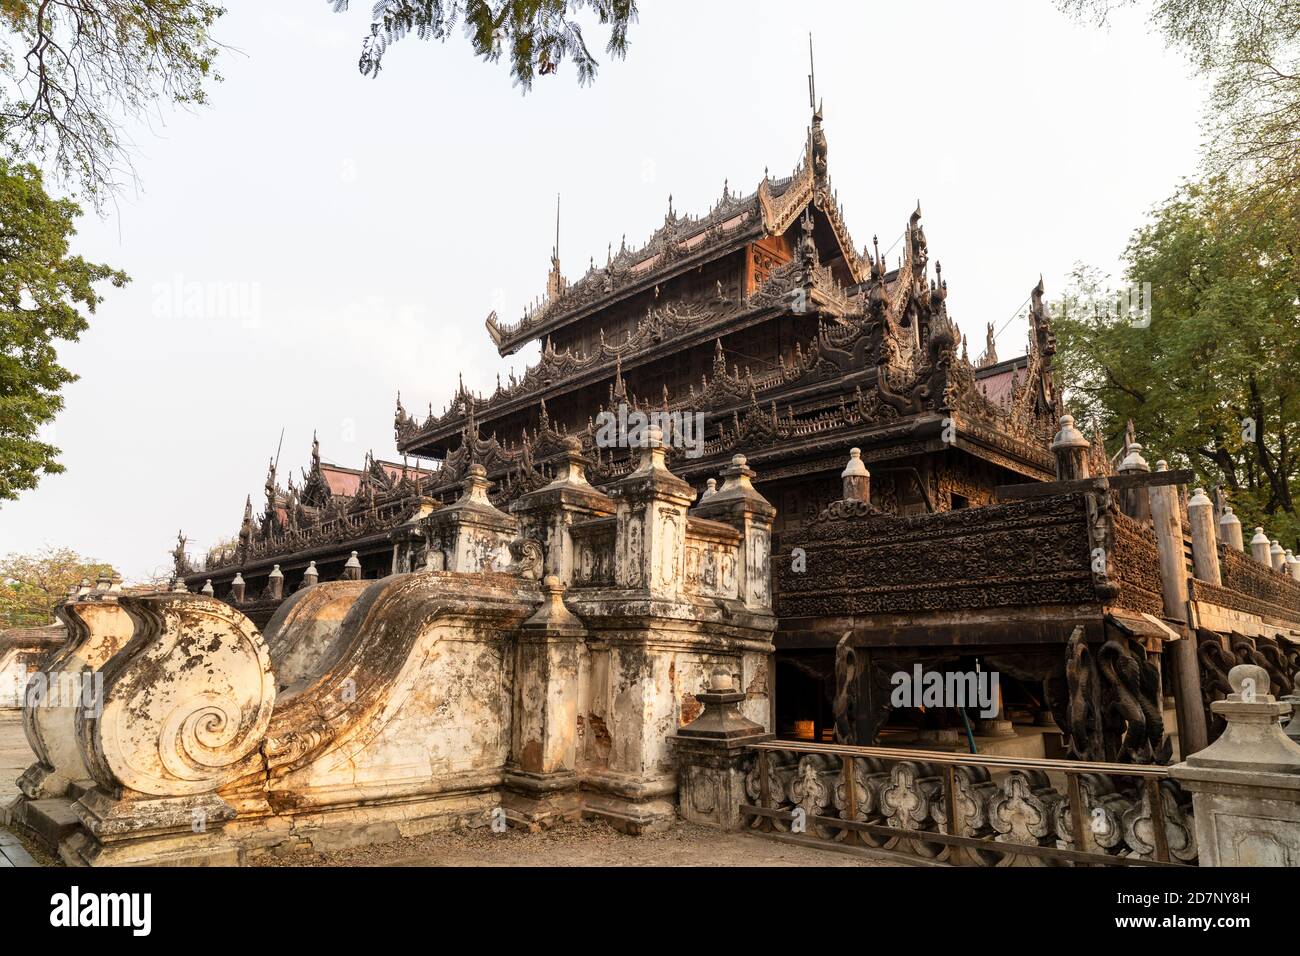 Wooden Shwenandaw Monastery, Mandalay, Myanmar Stock Photo